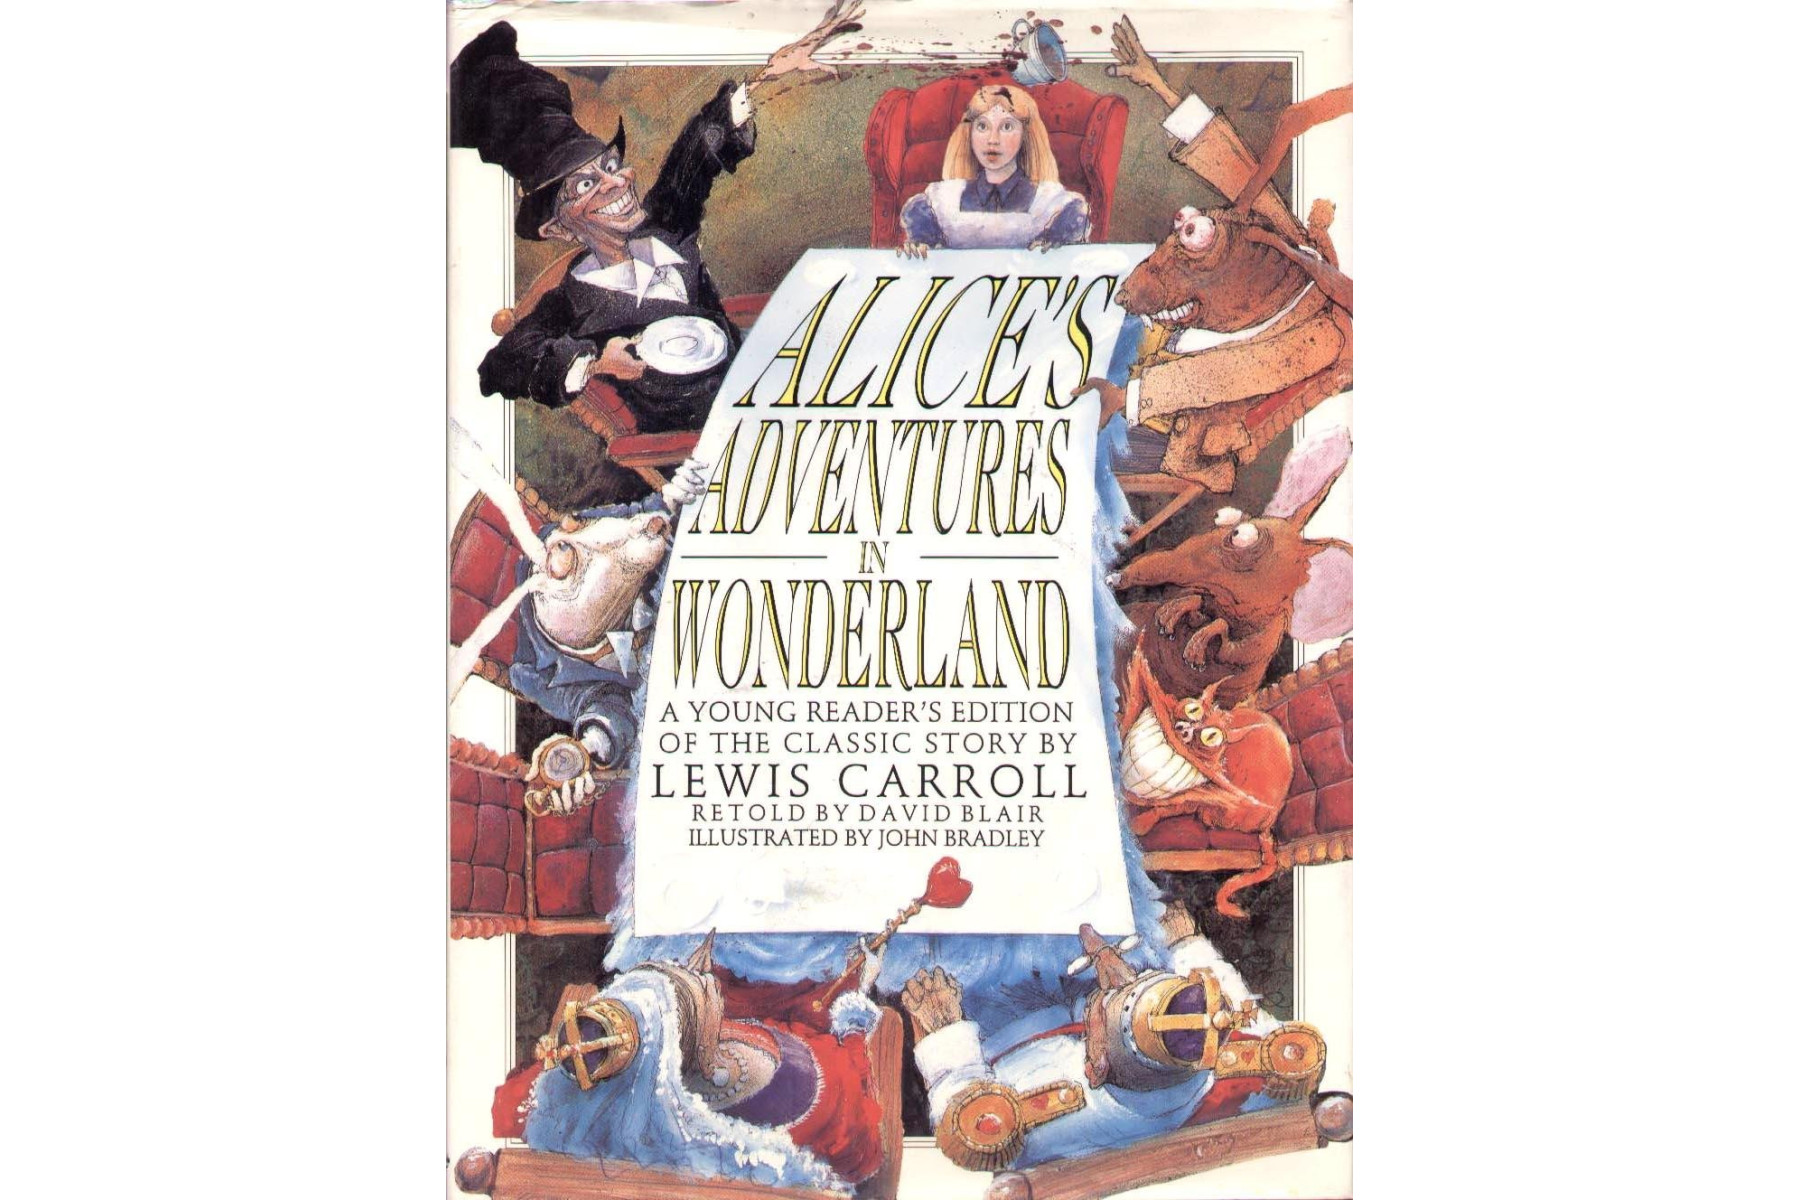 Alice in Wonderland (Children's classics)